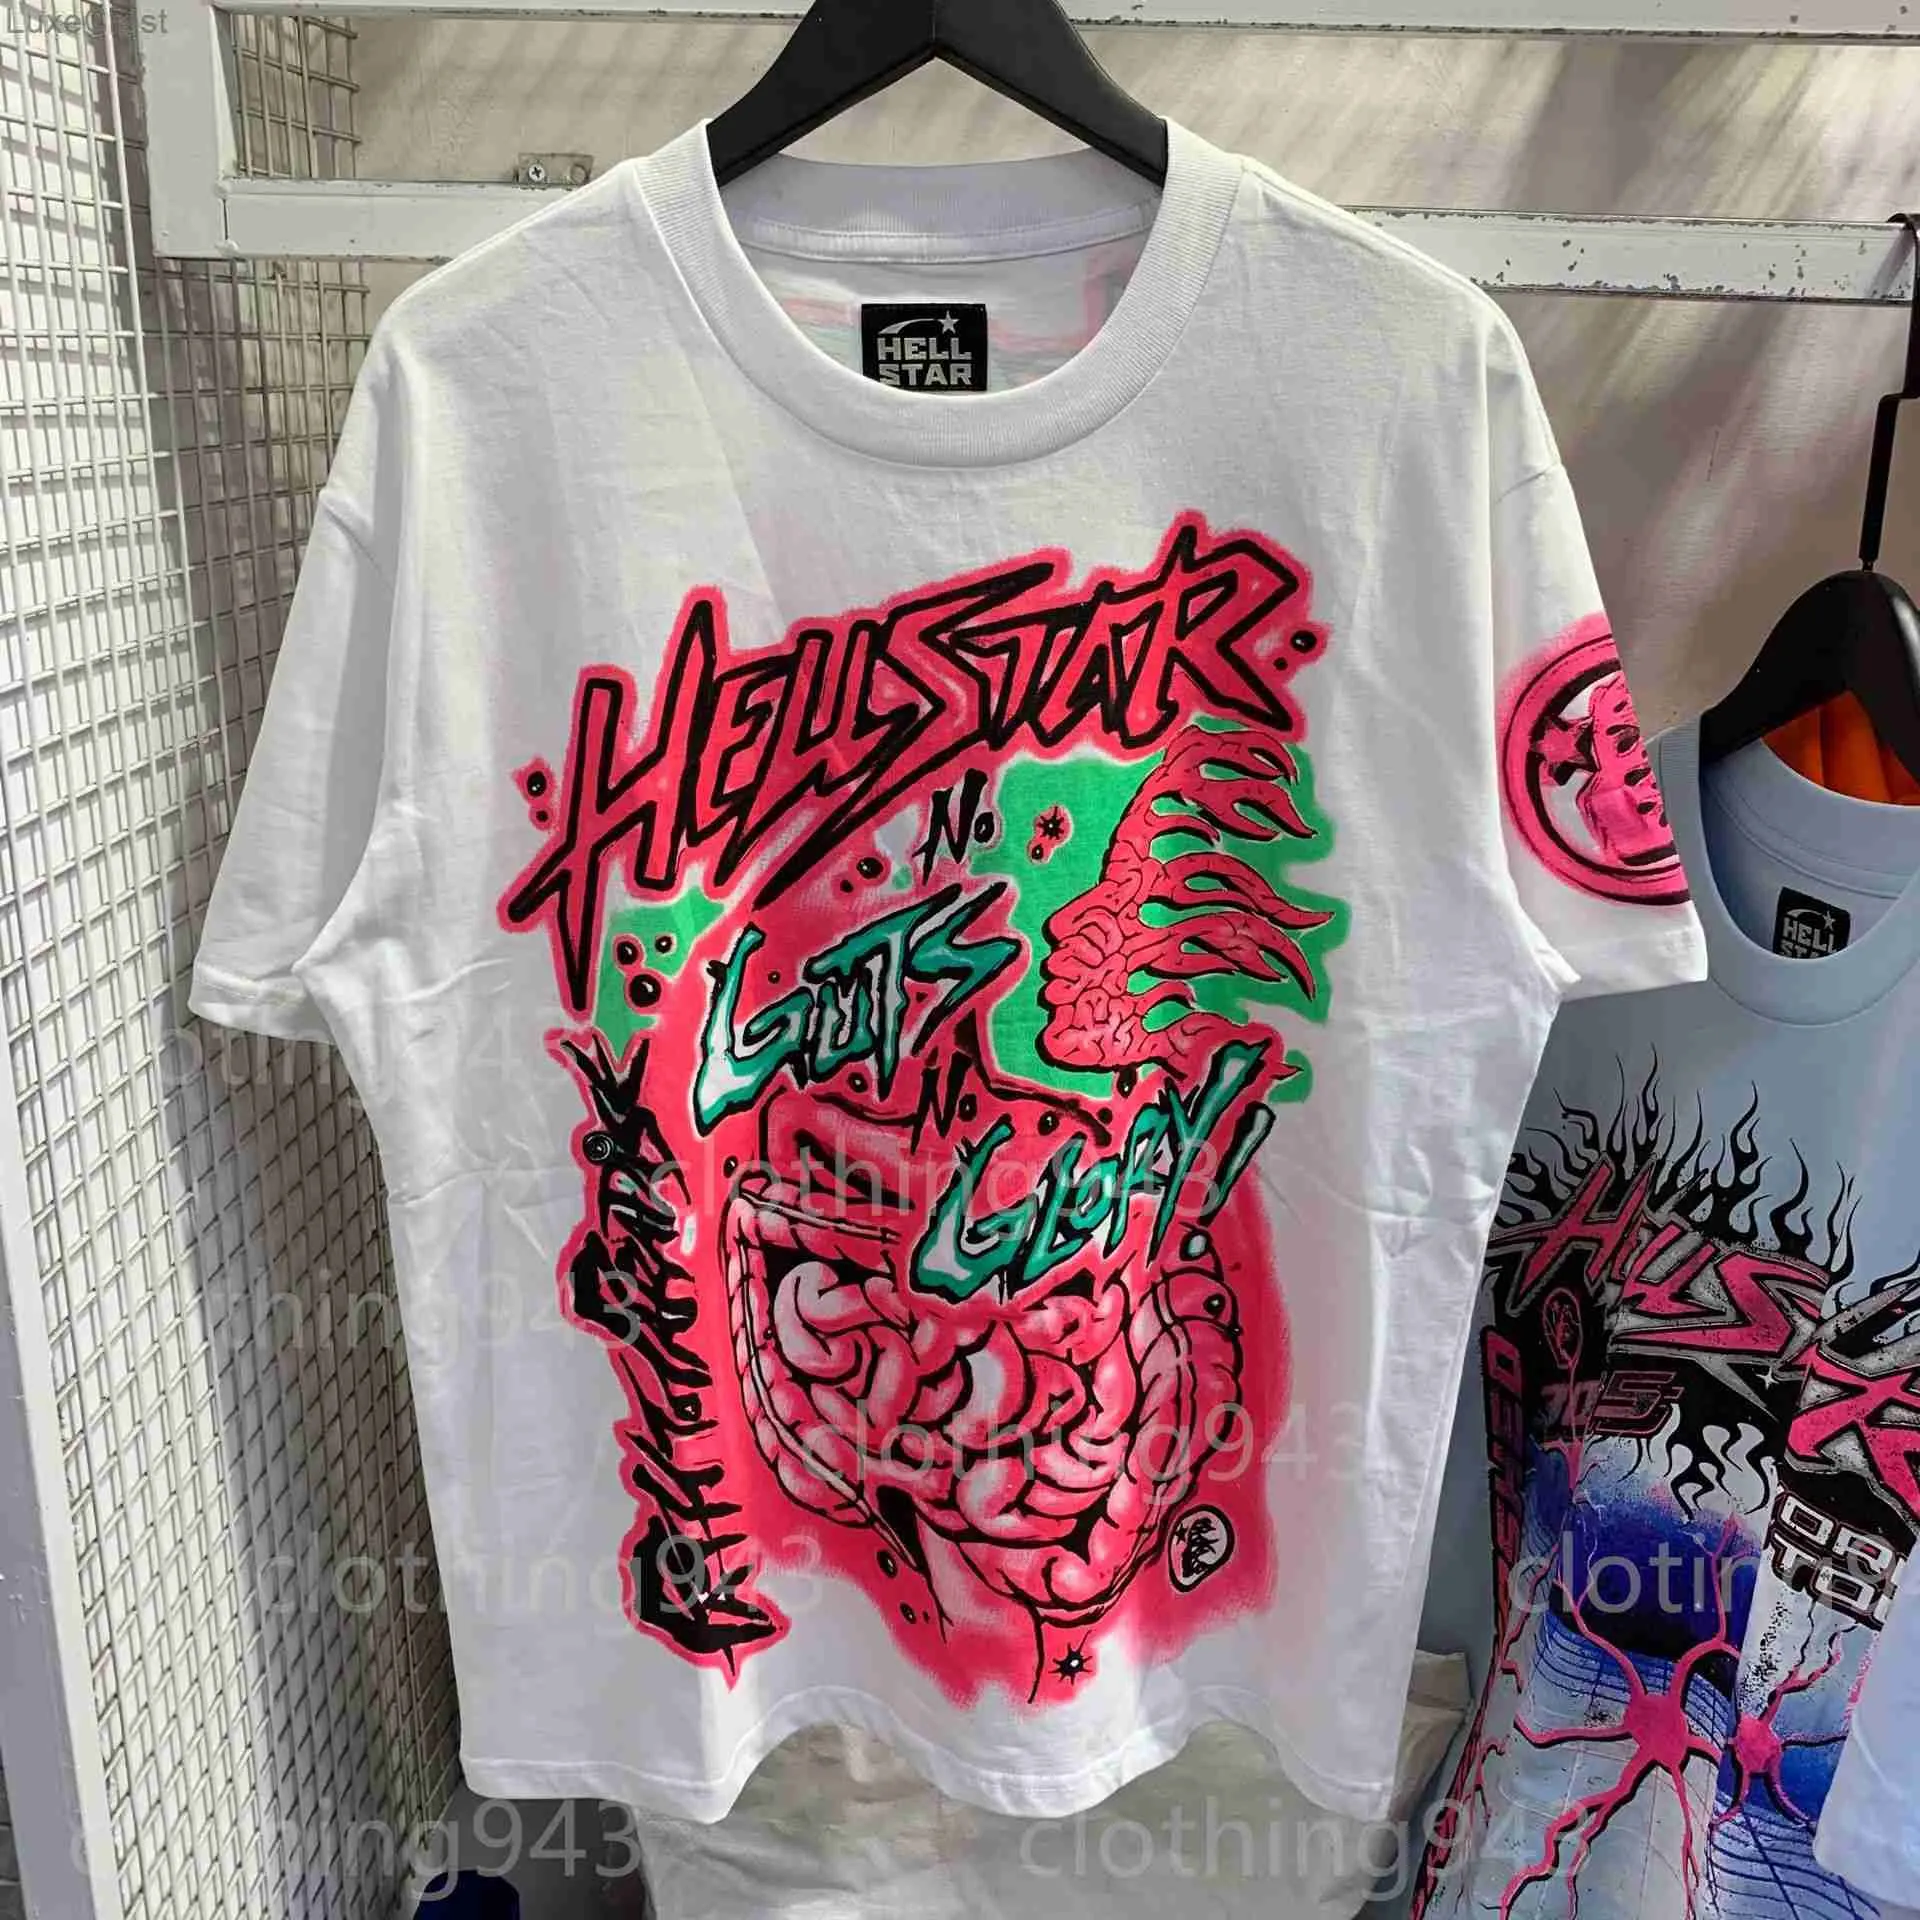 Homens de alta qualidade Camisetas Hellstar redonda Crew pescoço Designer de designer de hip hop Roupas soltas Padrão de algodão de algodão curta Mulheres principais camisetas causais de camisa